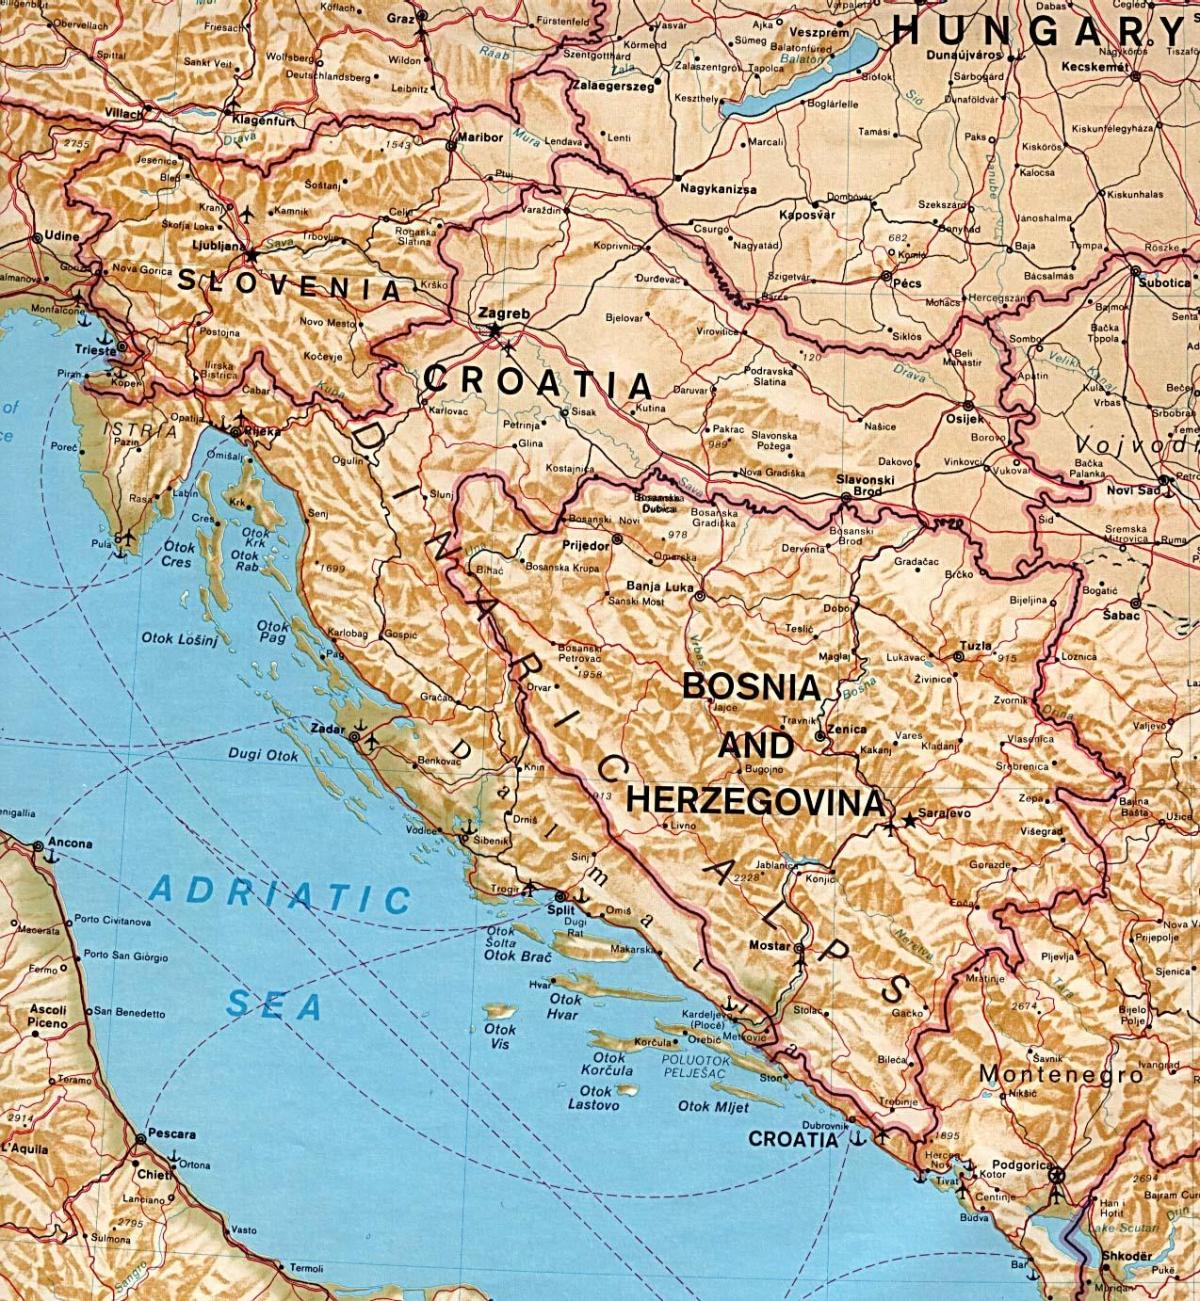 خريطة تبين سلوفينيا